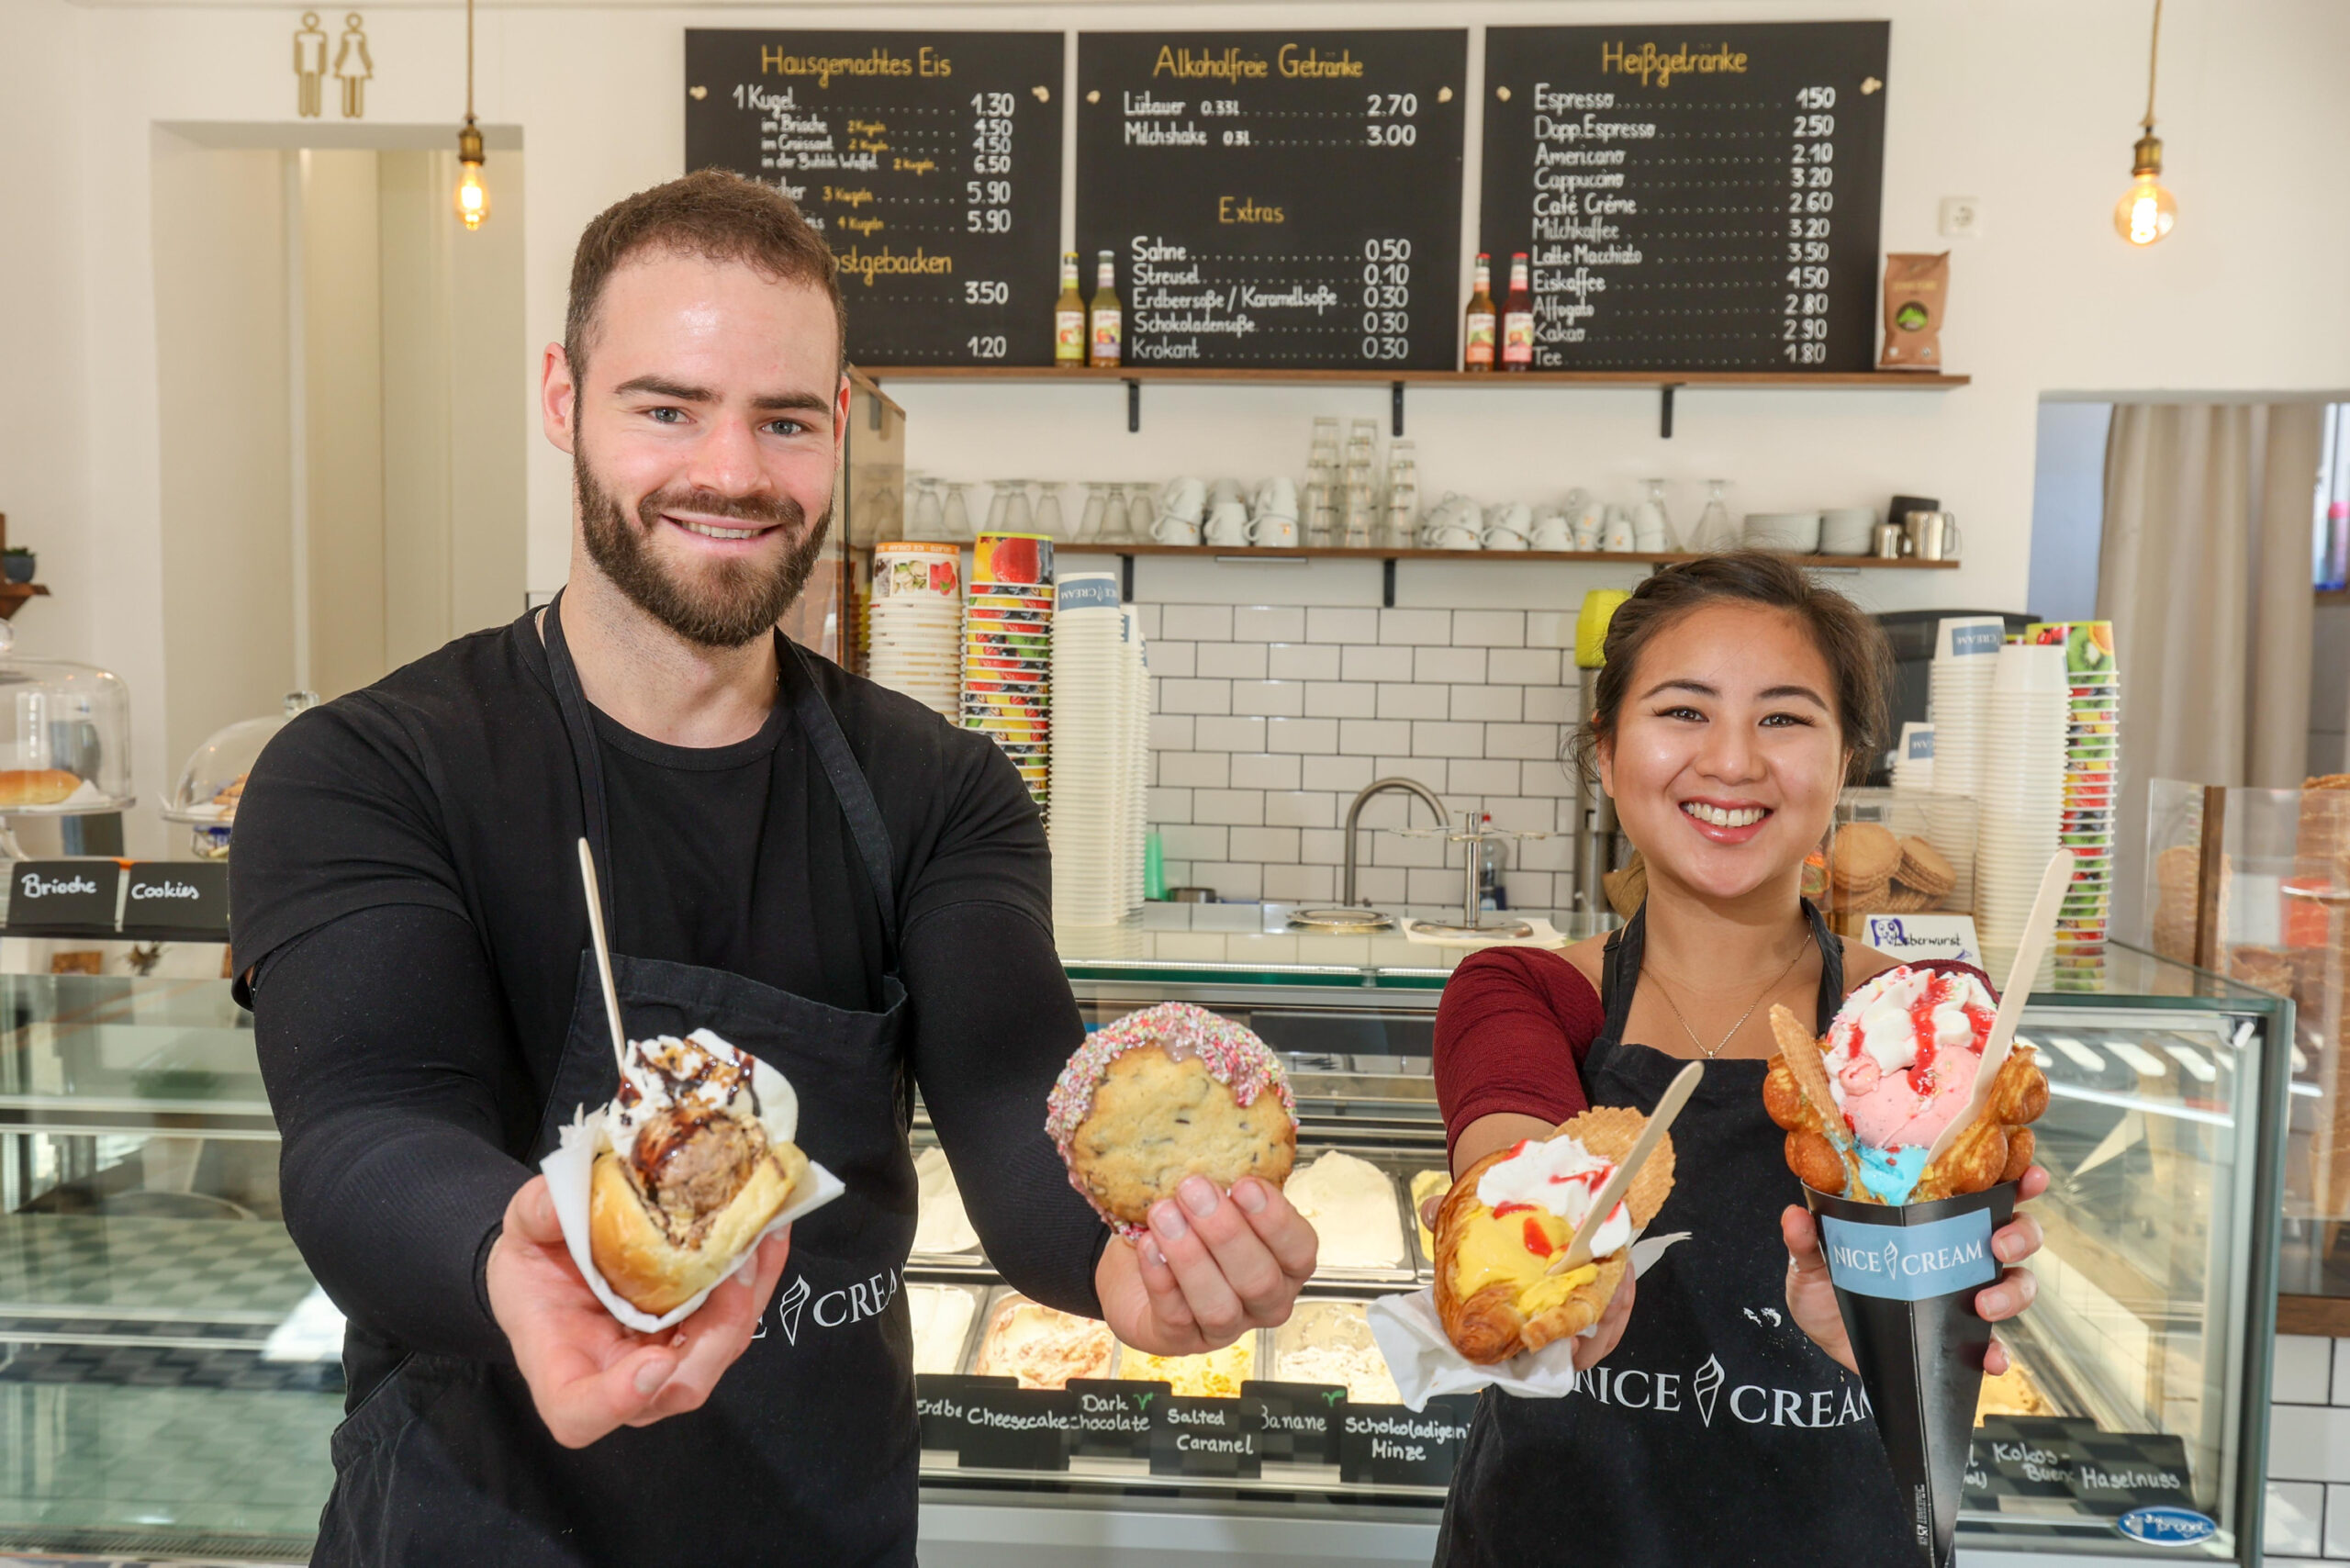 DIe Inhaber von „Nice Cream“ mit ihren Eiskreationen wie Eis-Sandwiches oder Eis im Croissant in der Hand